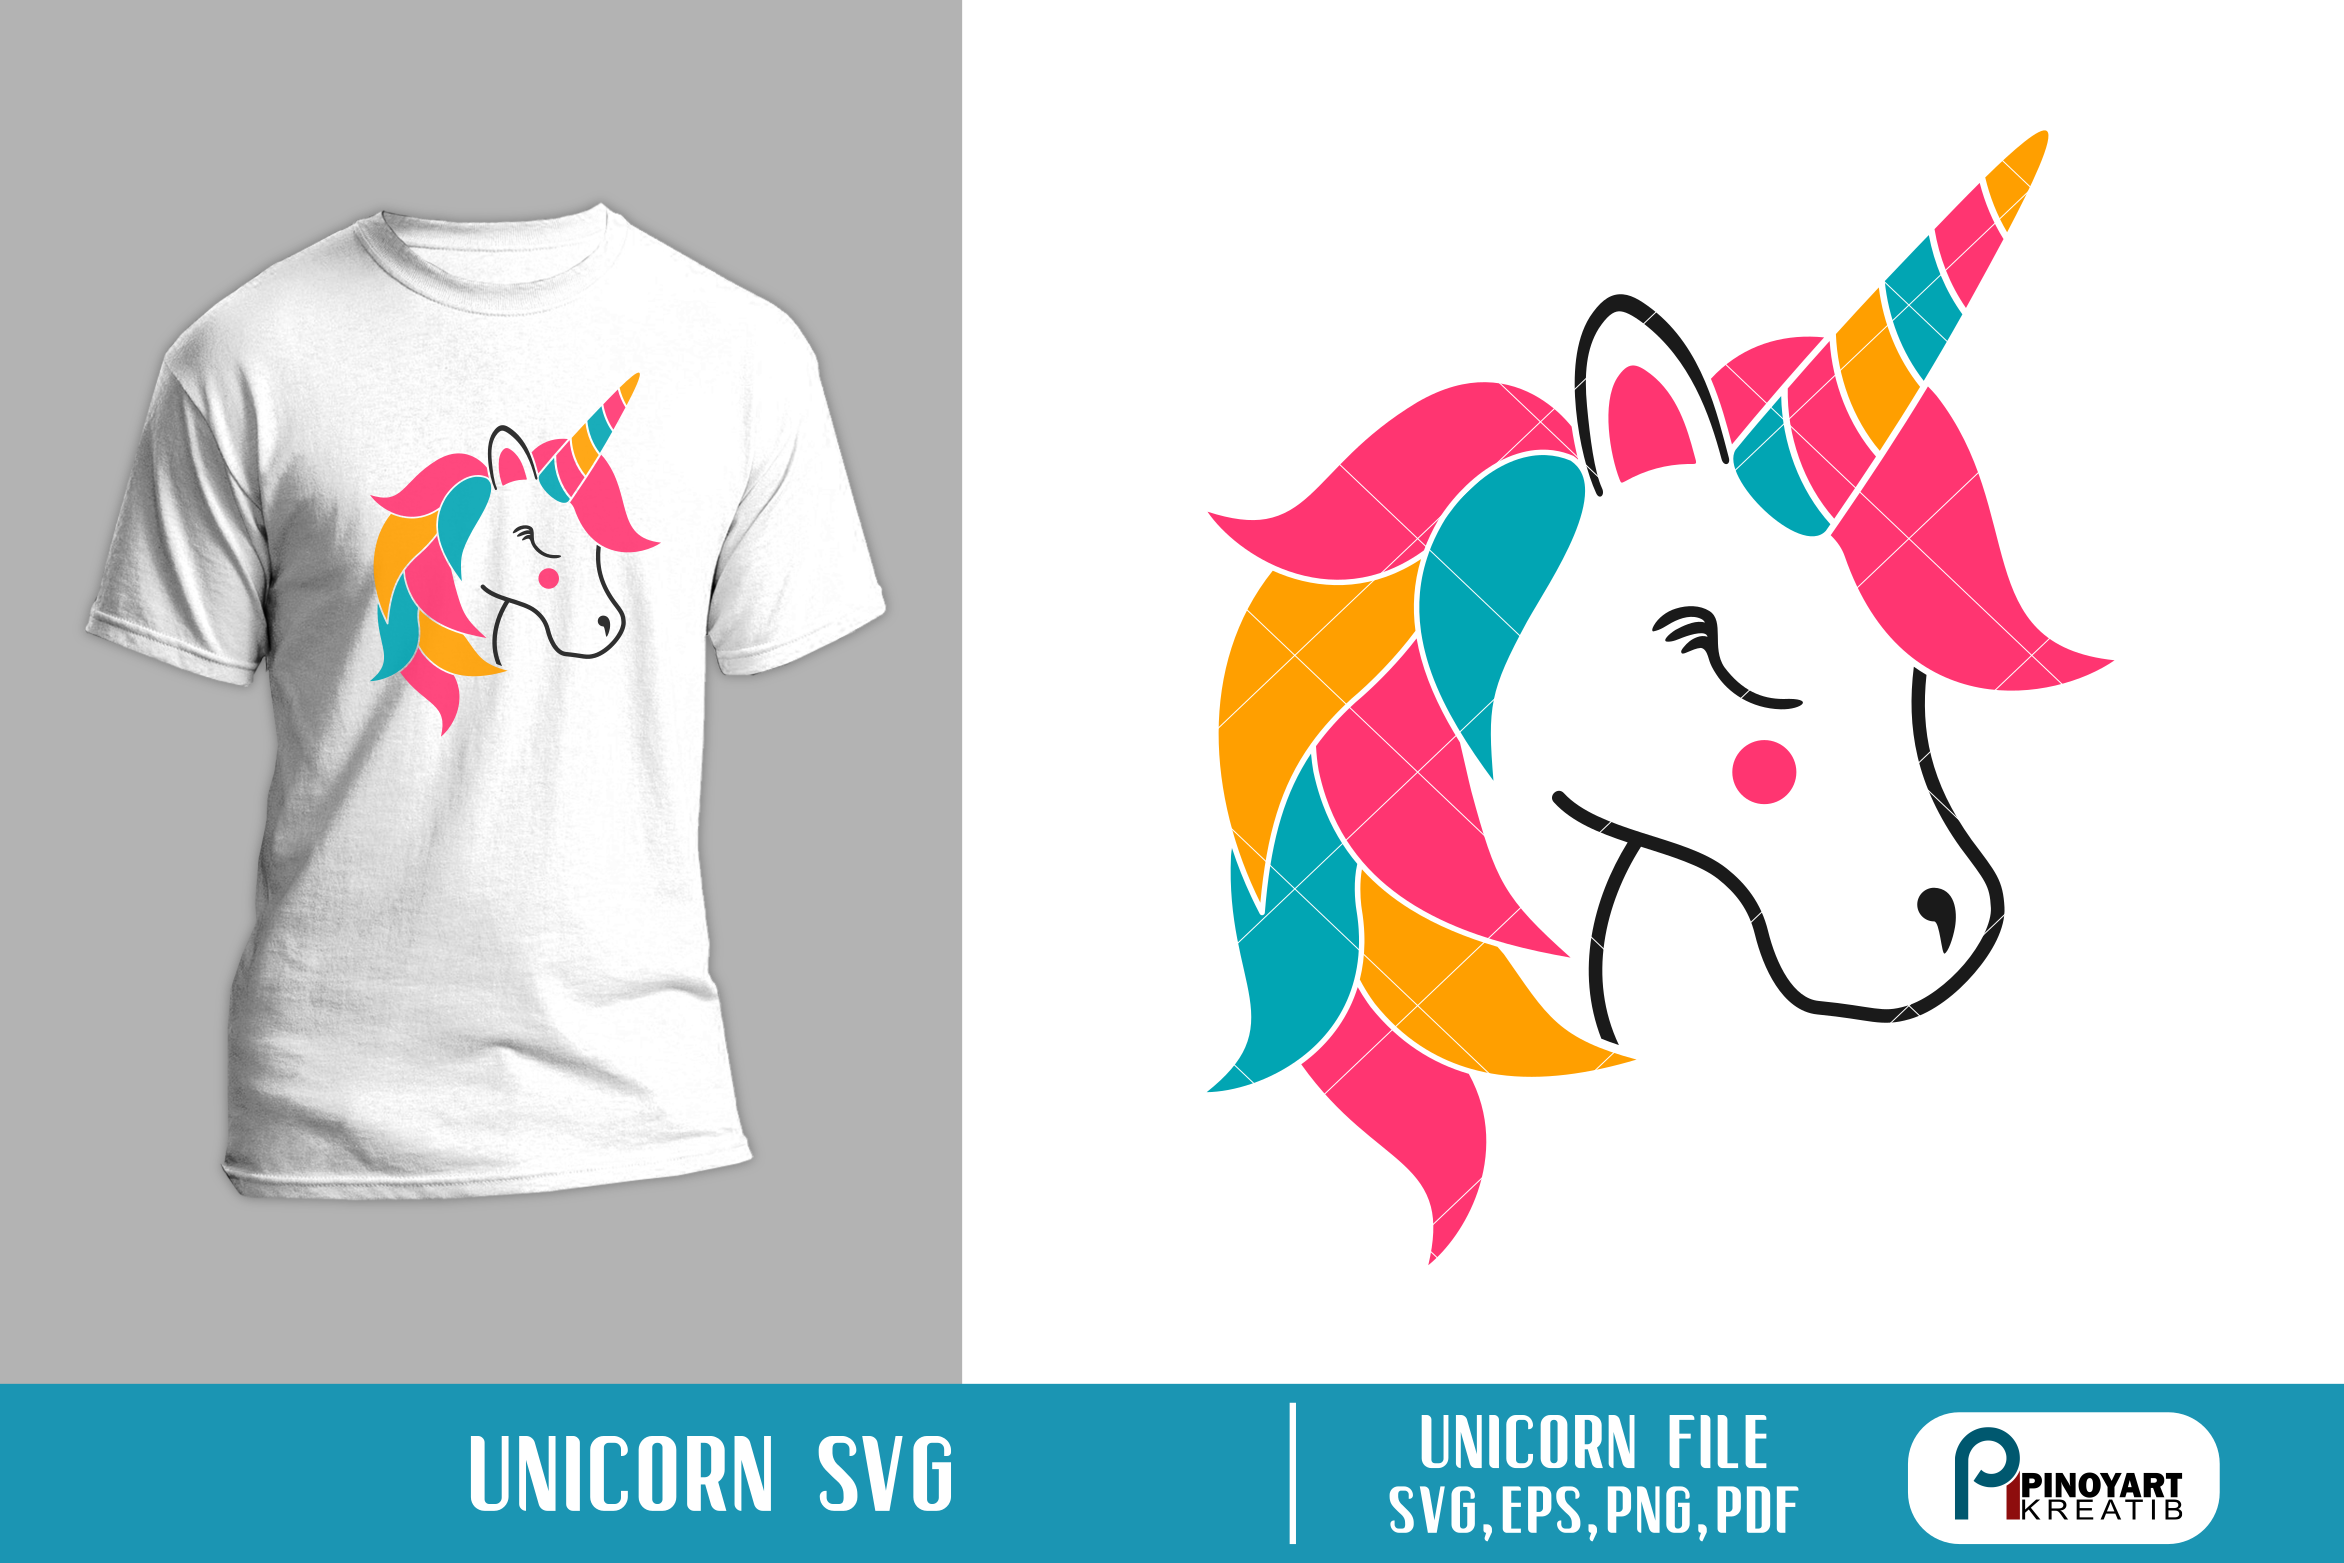 Download Unicorn SVG, Unicorn graphics, Unicorn clip art, svg file